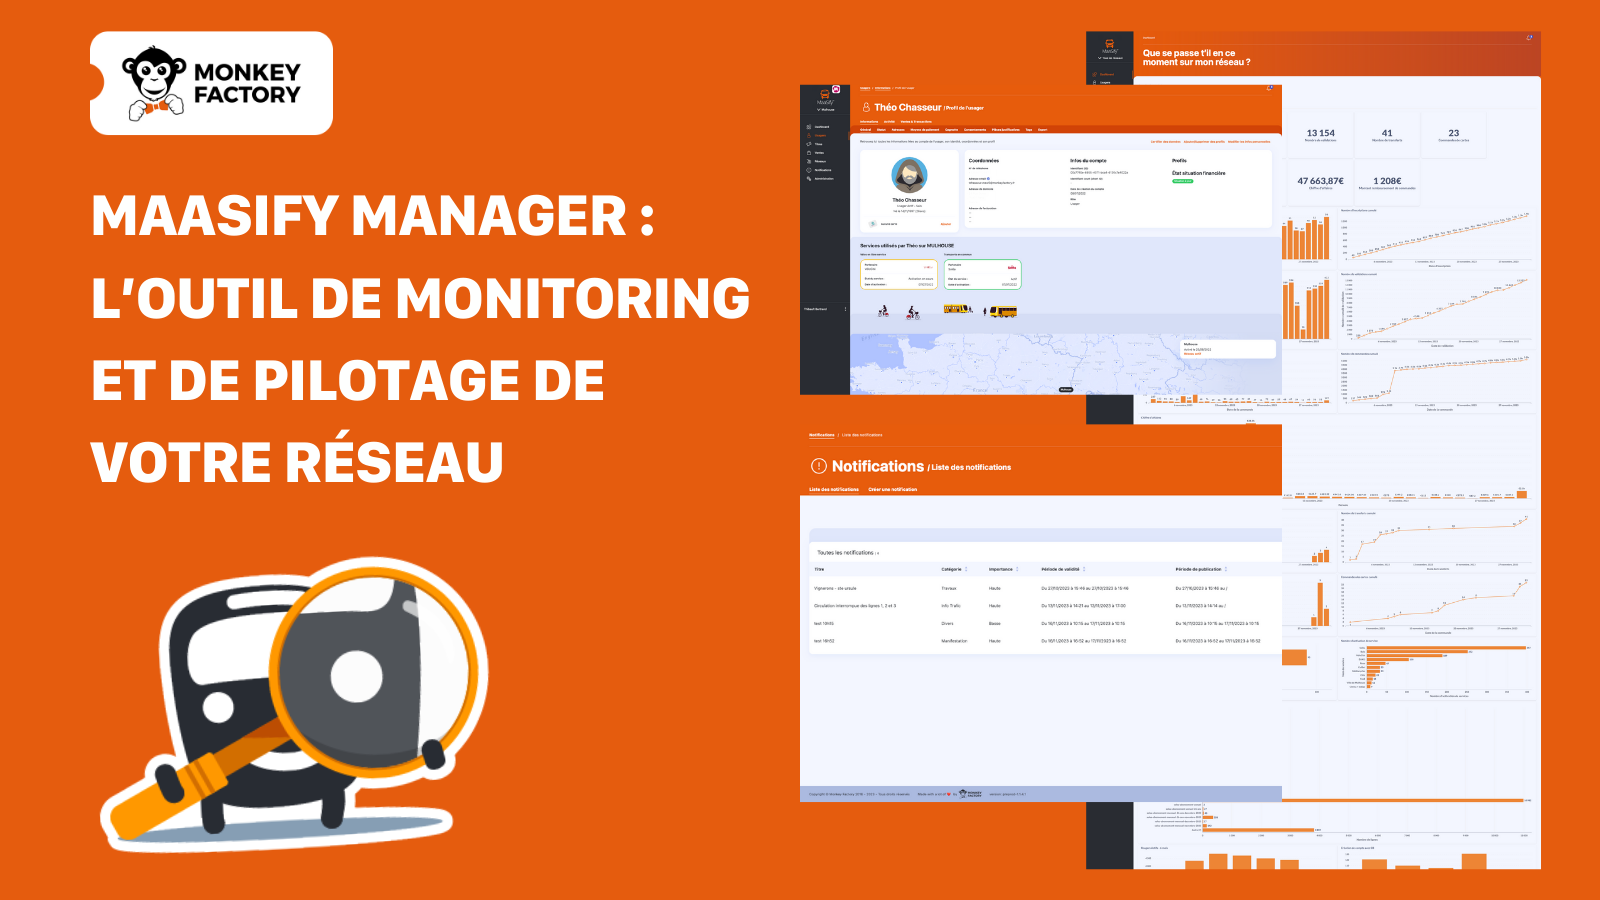 MaaSify Manager : l’outil de monitoring et de pilotage idéal pour gérer son réseau de transport